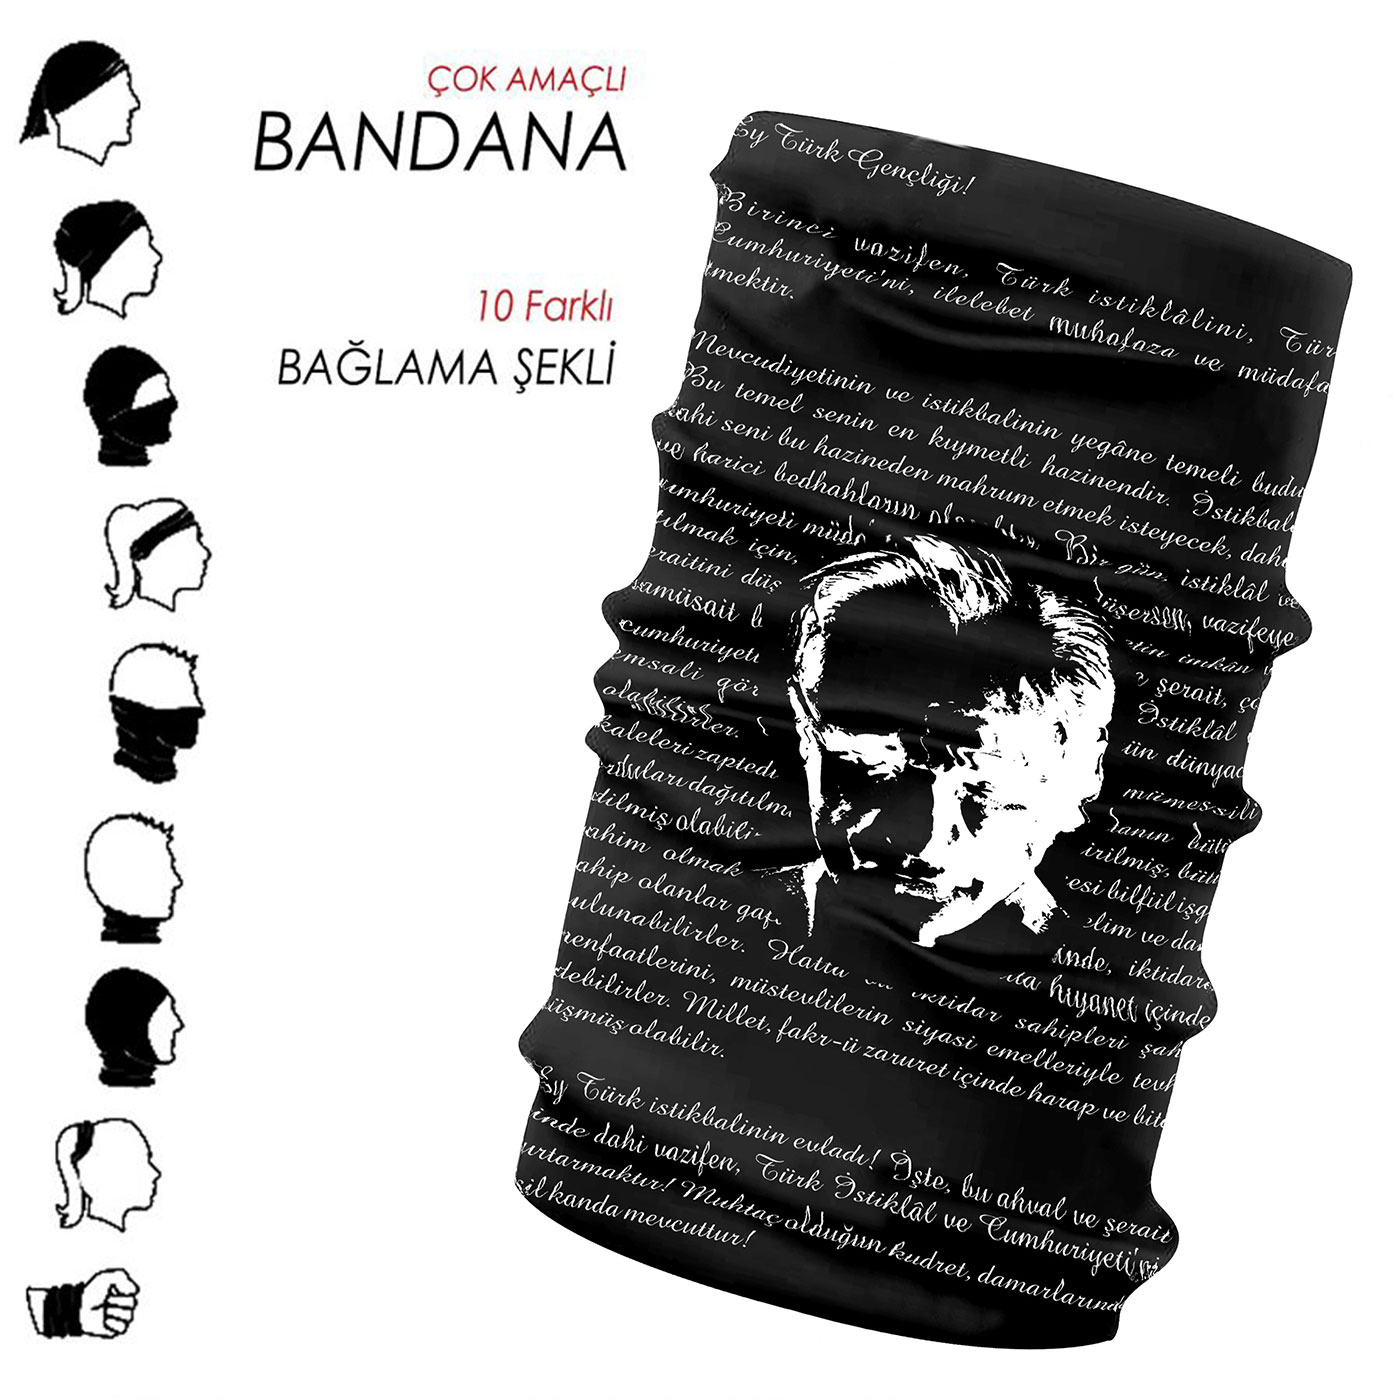 Bandana - 07